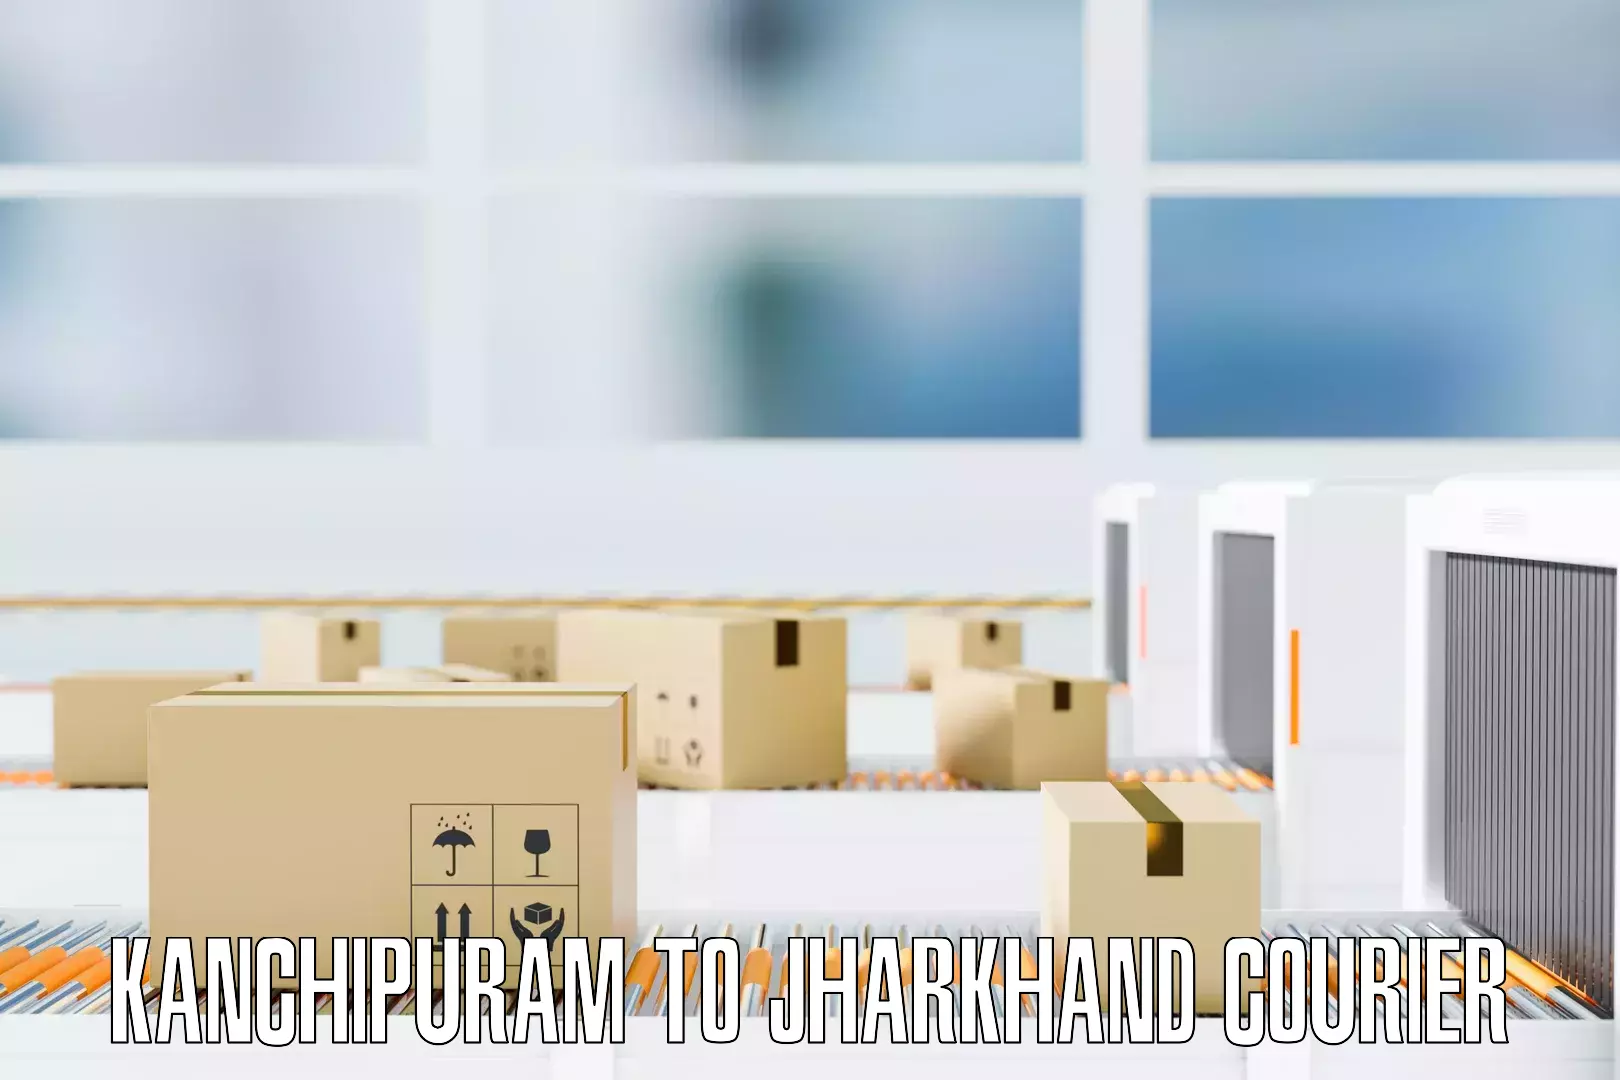 Professional furniture transport Kanchipuram to Barharwa